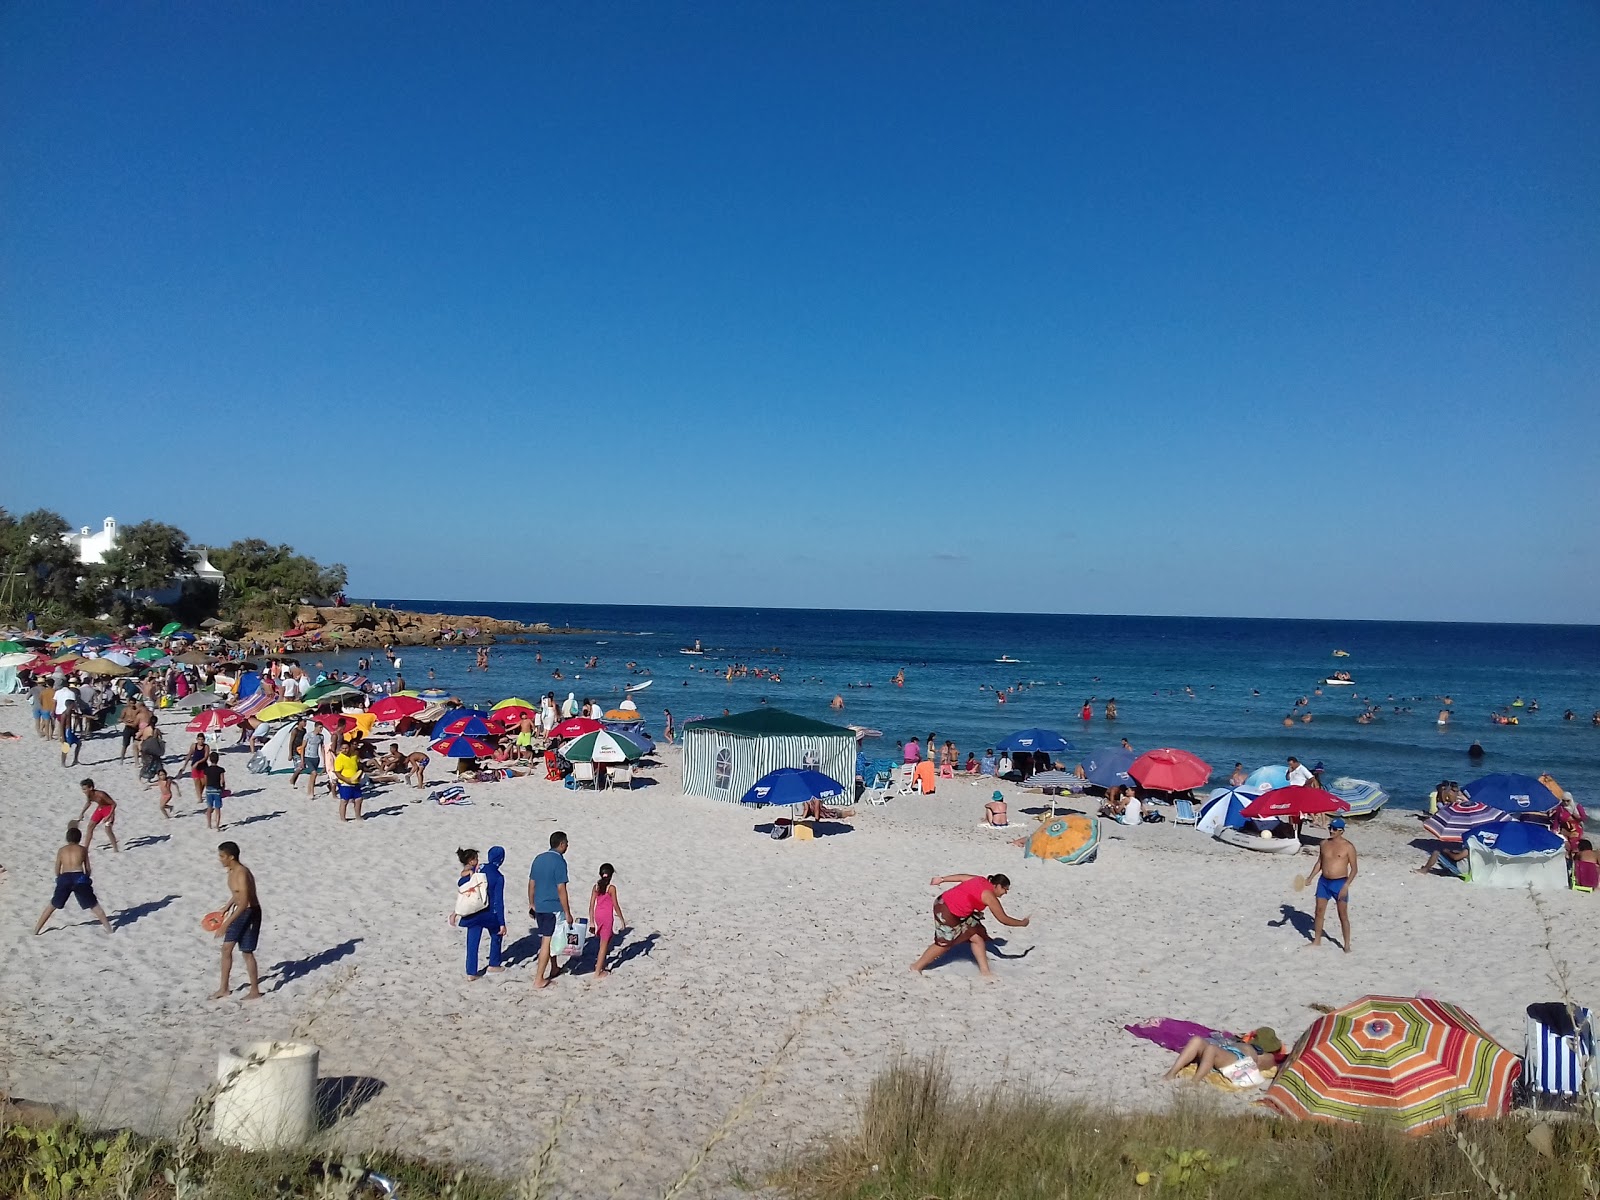 Fatha Beach'in fotoğrafı parlak kum yüzey ile